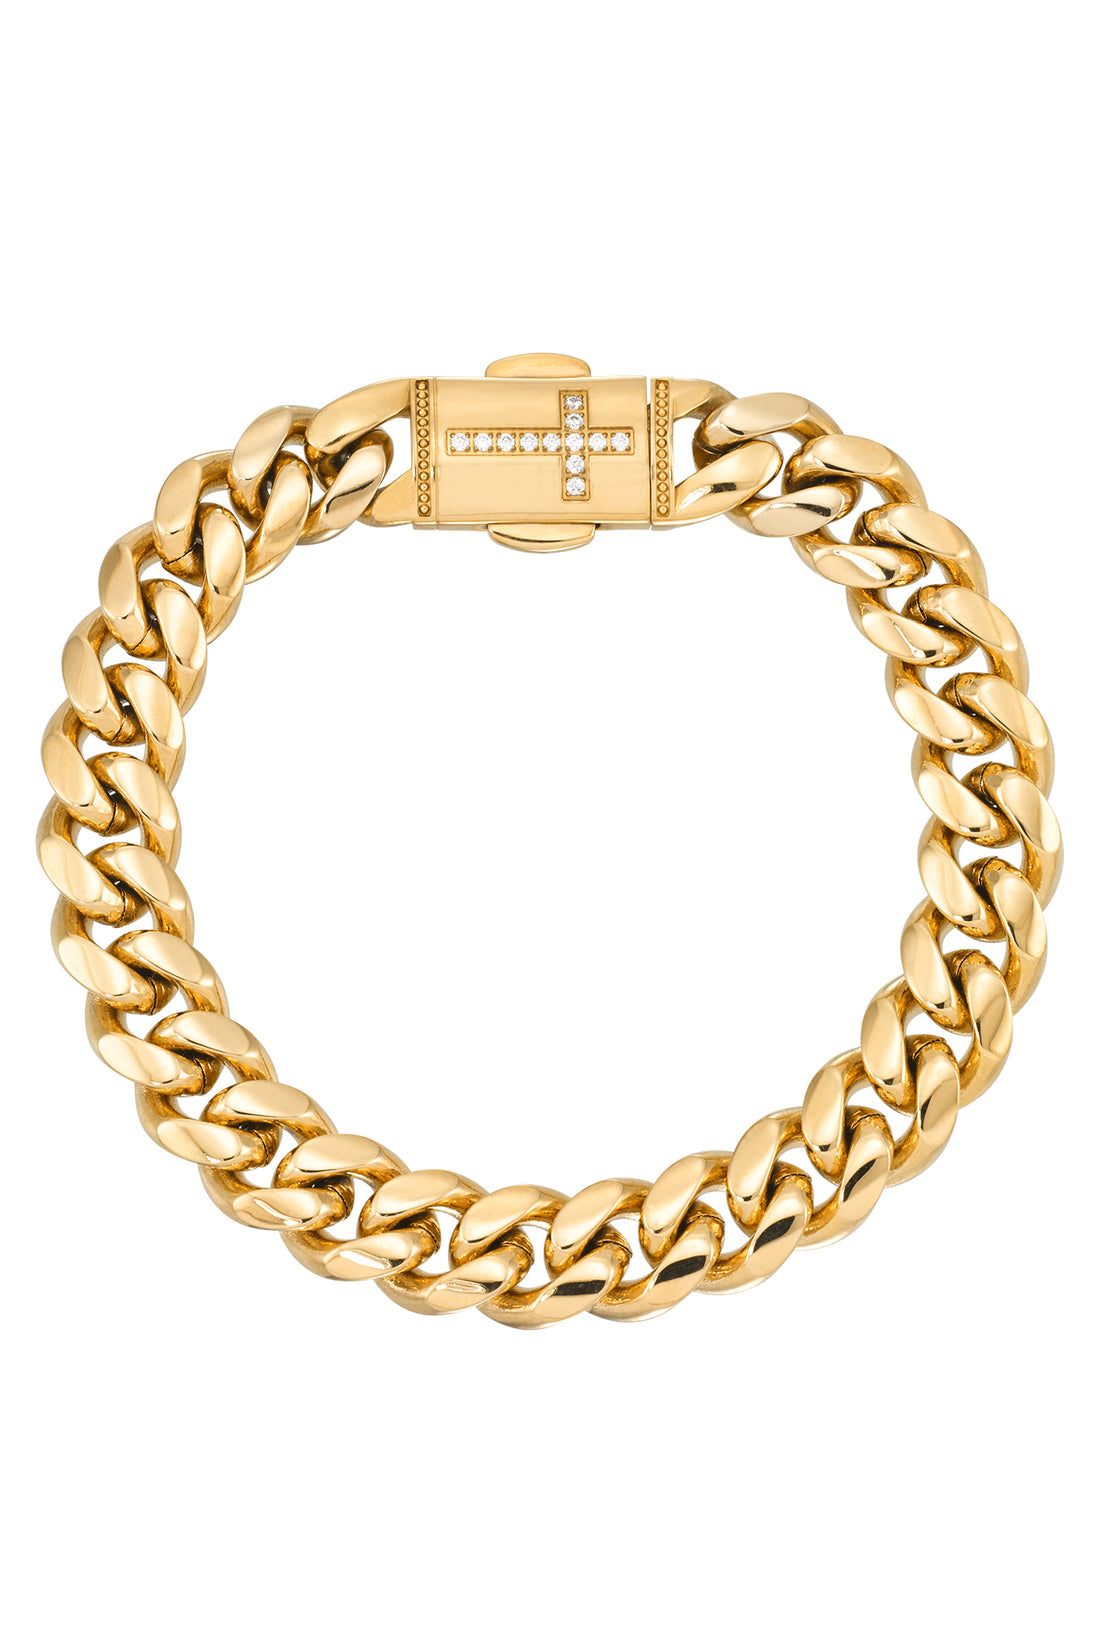 14k Gold & Black Enamel Link Bracelet Auction